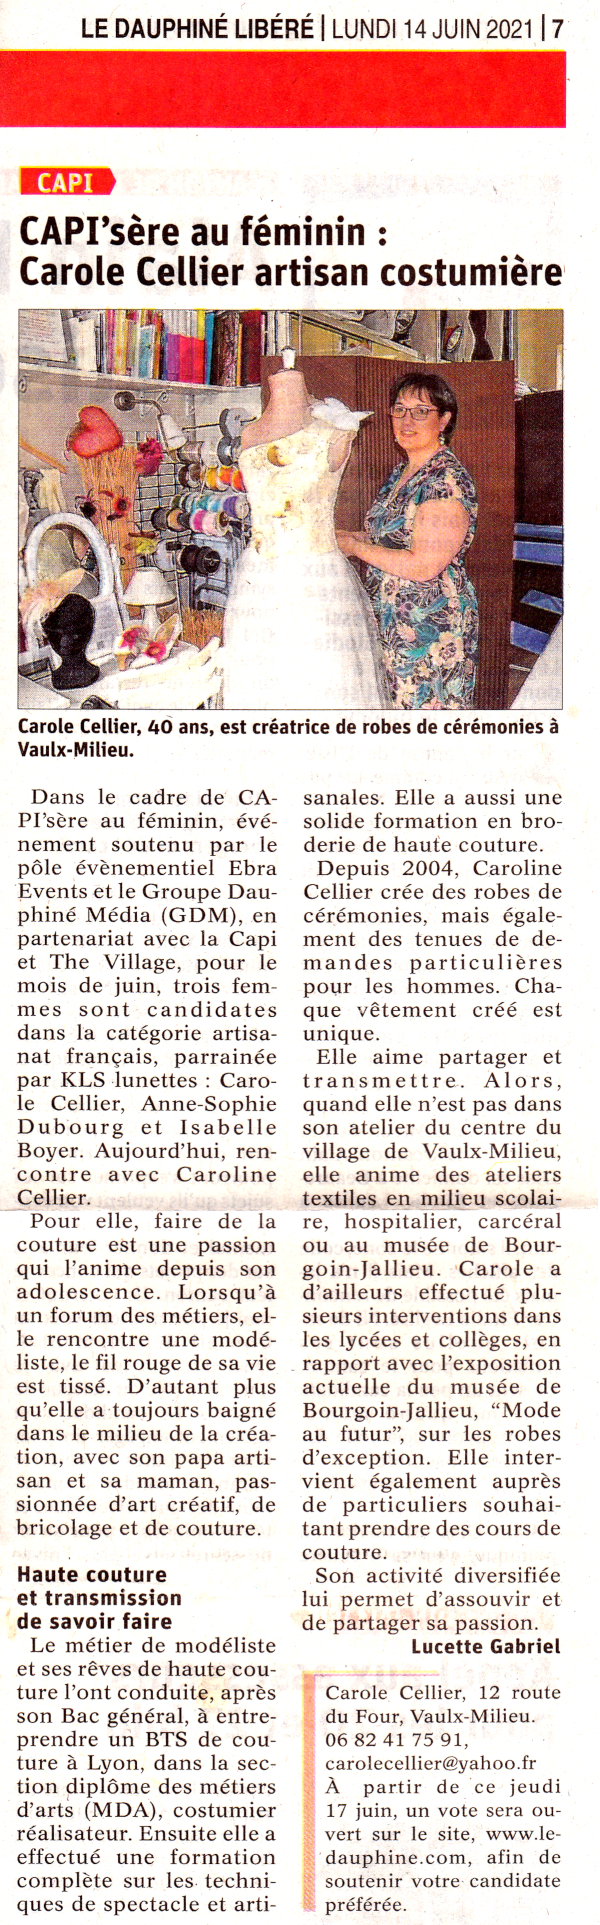 "CAPI'sère au féminin : Carole Cellier artisan costumière" Article paru dans le Dauphiné Libéré le 14 juin 2021